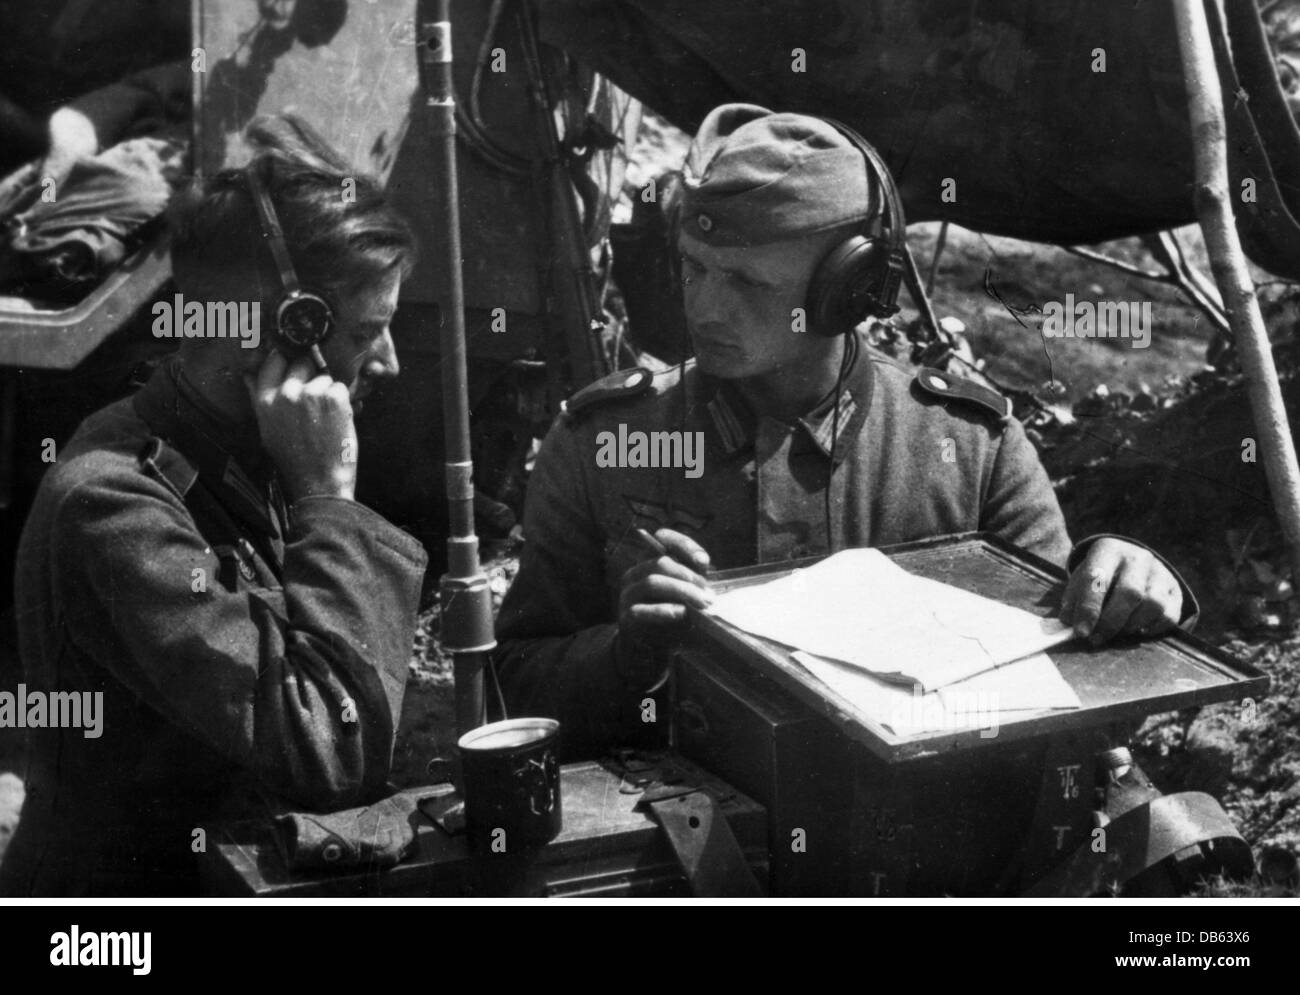 Evénements, Seconde Guerre mondiale / Seconde Guerre mondiale, Union  soviétique, opération 'Barbarossa' (invasion allemande de l'Union  soviétique), Centre du Groupe d'Armée, Bélarus, opérateurs radio de la 19e  division Panzer dans un poste